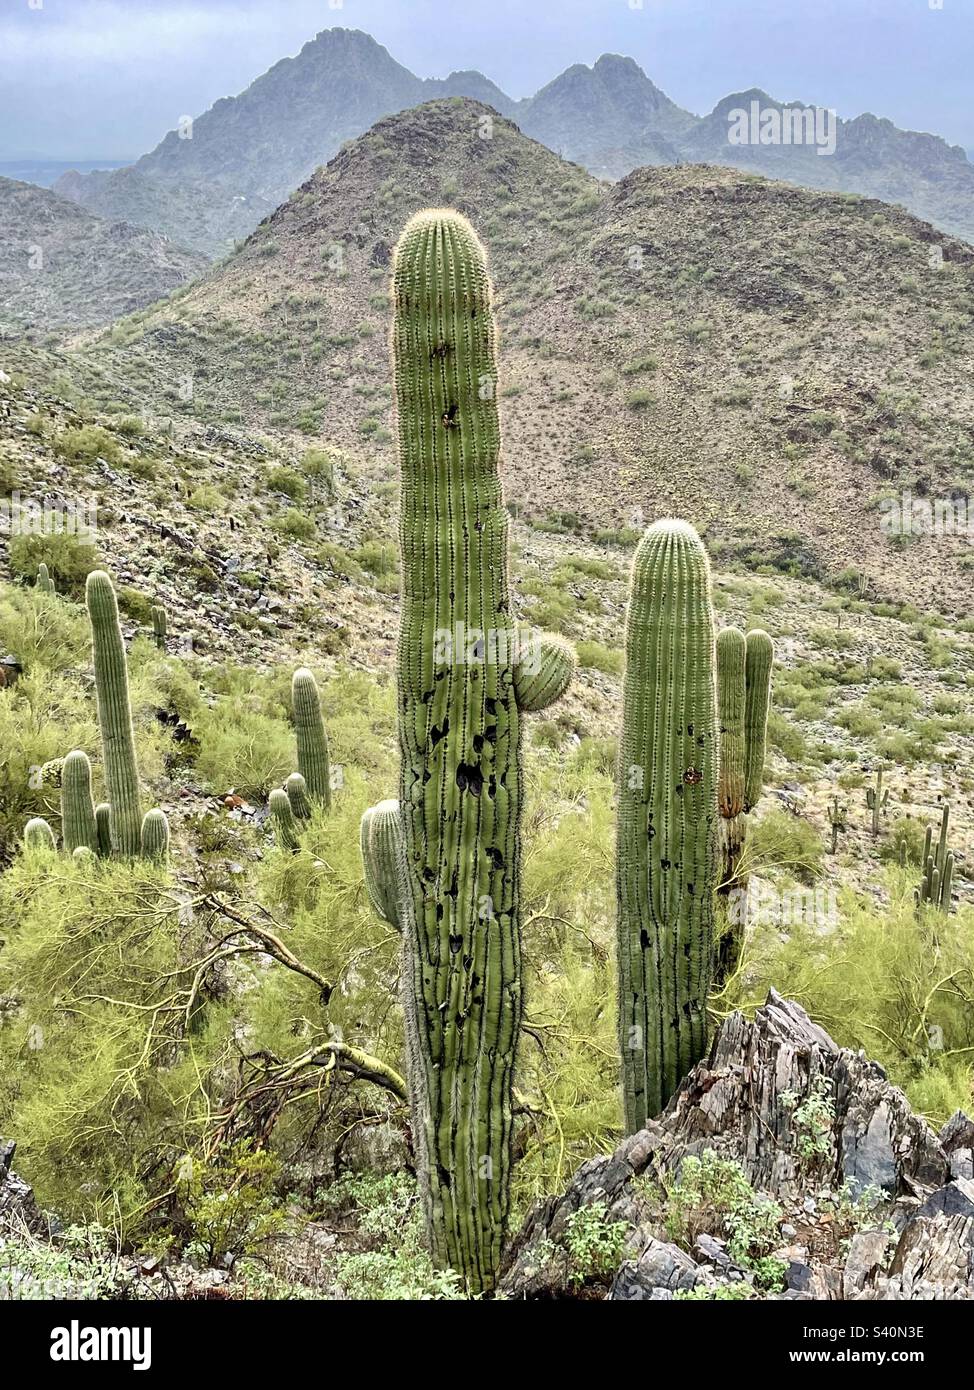 Wenn es regnet, gießt es, in der Wüste, stürzt die Kakteen und grünt den Palo verde. Saguaro-Kakteen stehen hoch, ausgerichtet am Piestwa Peak, Phoenix Mountain Preserve AZ Stockfoto